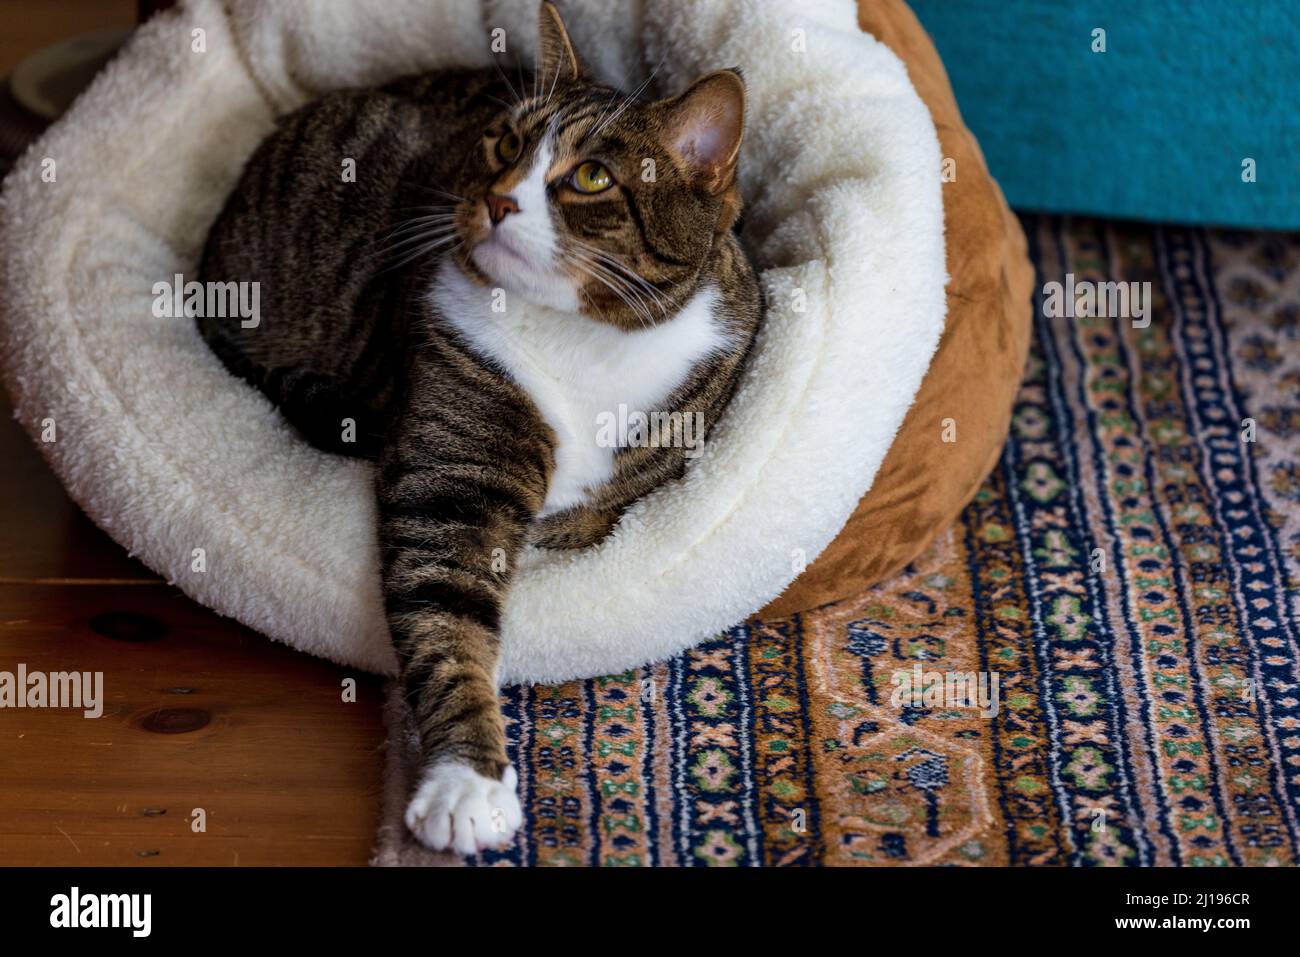 Gato mirando hacia arriba mientras está sentado en la cama con el brazo extendido Foto de stock